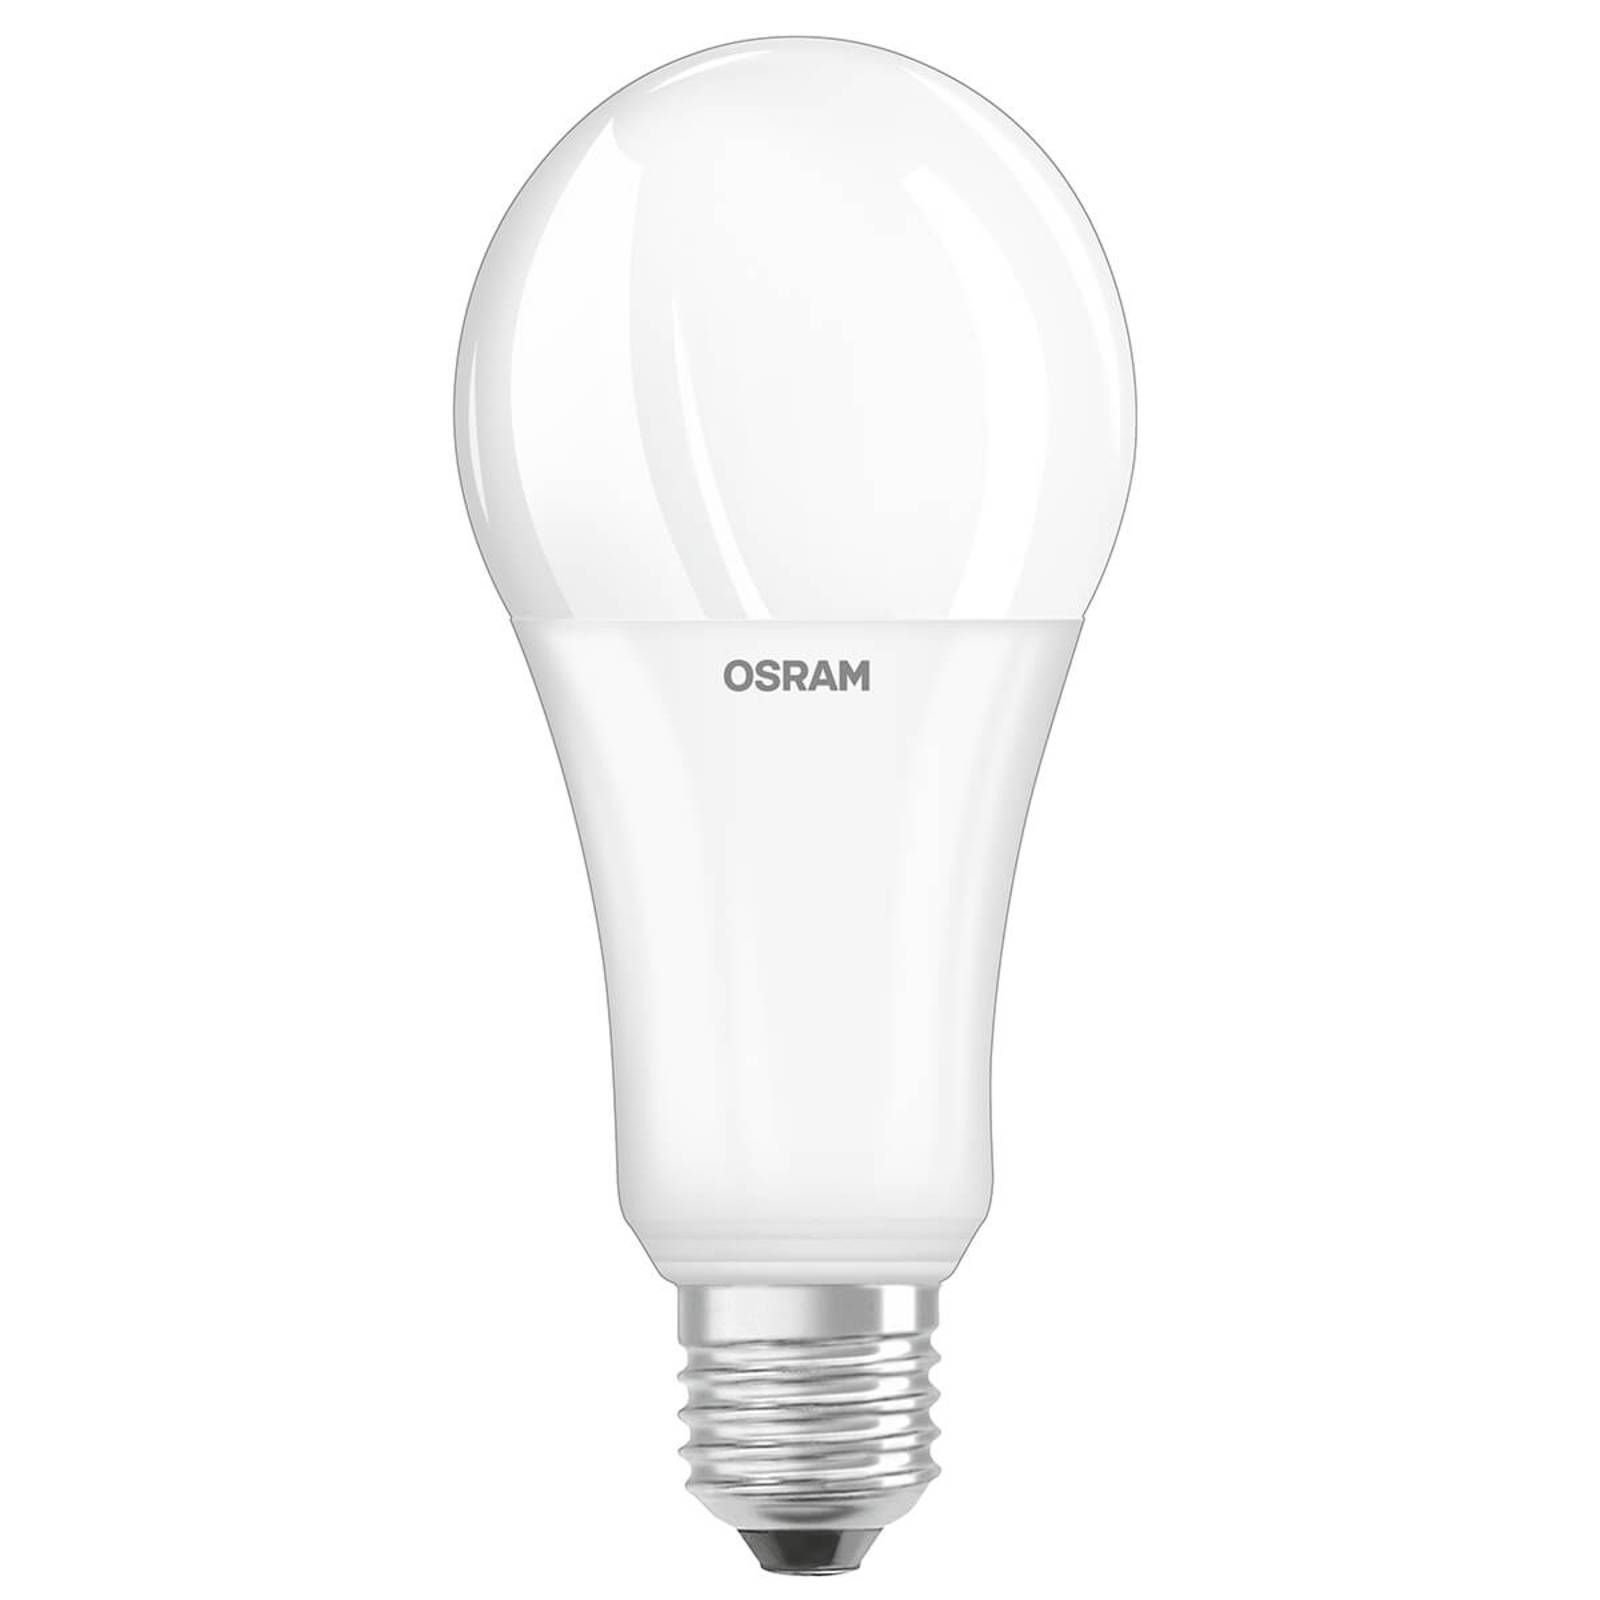 OSRAM OLED žiarovka E27 20W, 2.700K, opál, stmievač, E27, 20W, Energialuokka: E, P: 13.7 cm